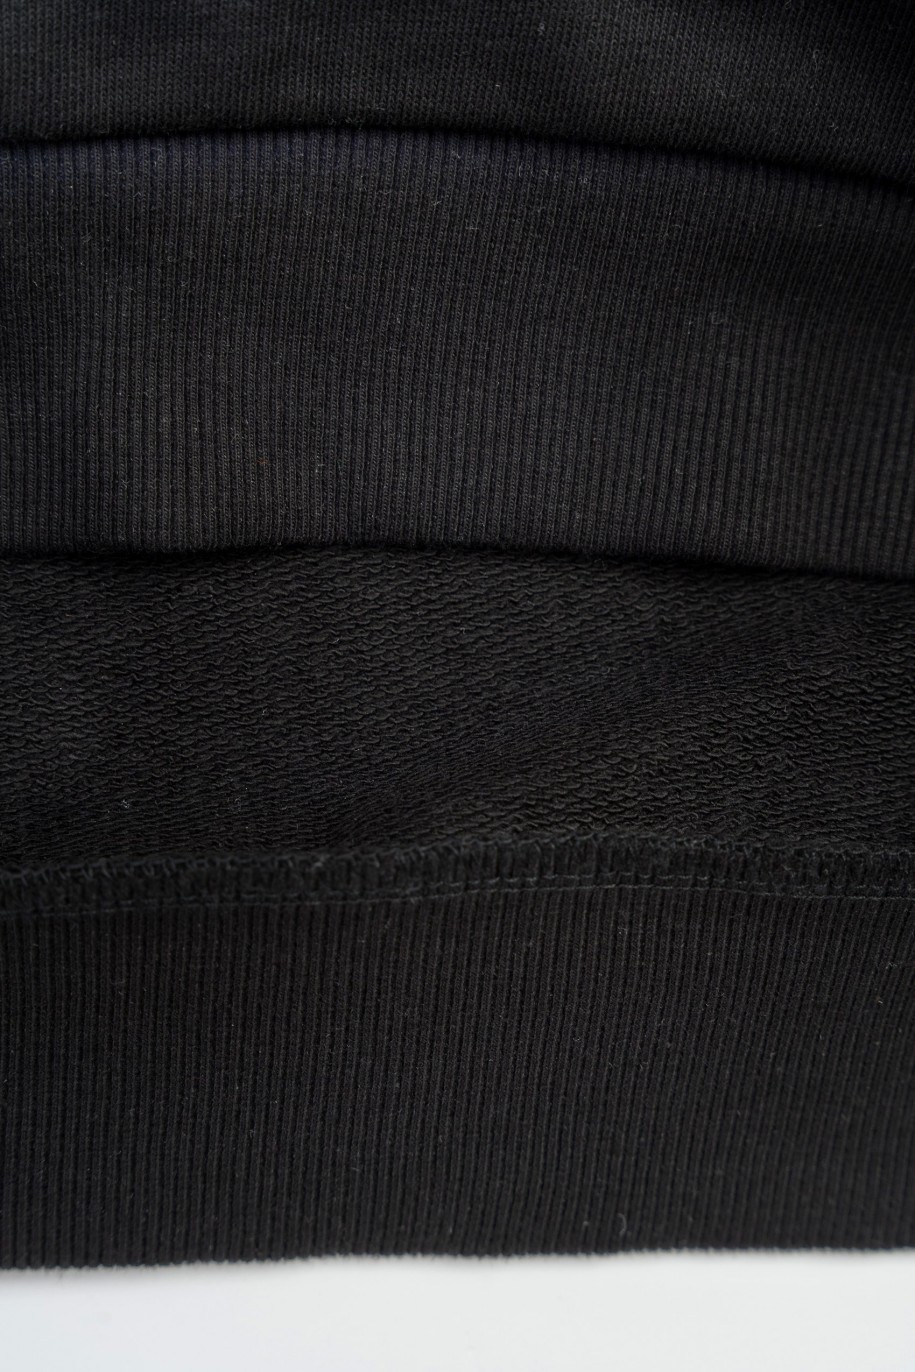 Czarna bluza z kapturem z fioletowym nadrukiem imitującym cieniowanie - 47526